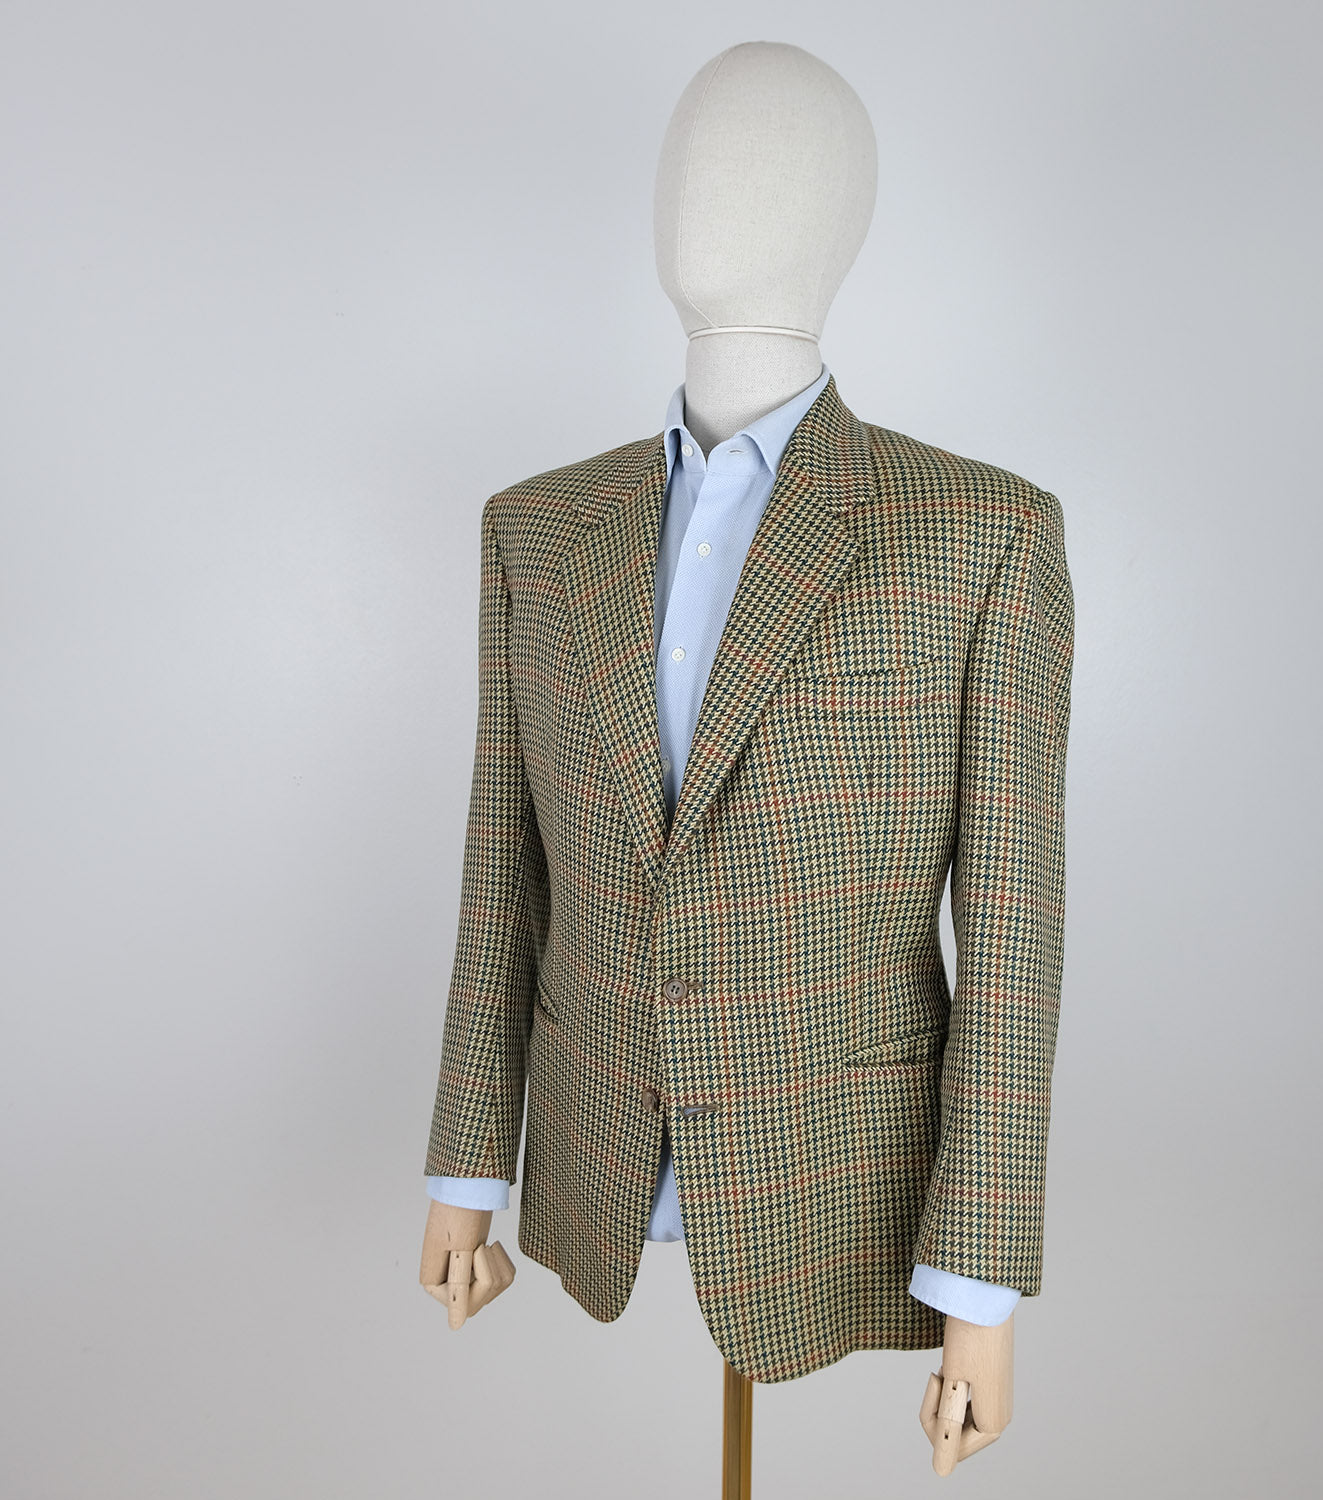 Fioravanti, ruskea tweed-takki, räätälityötä, koko 52, ovh $5000